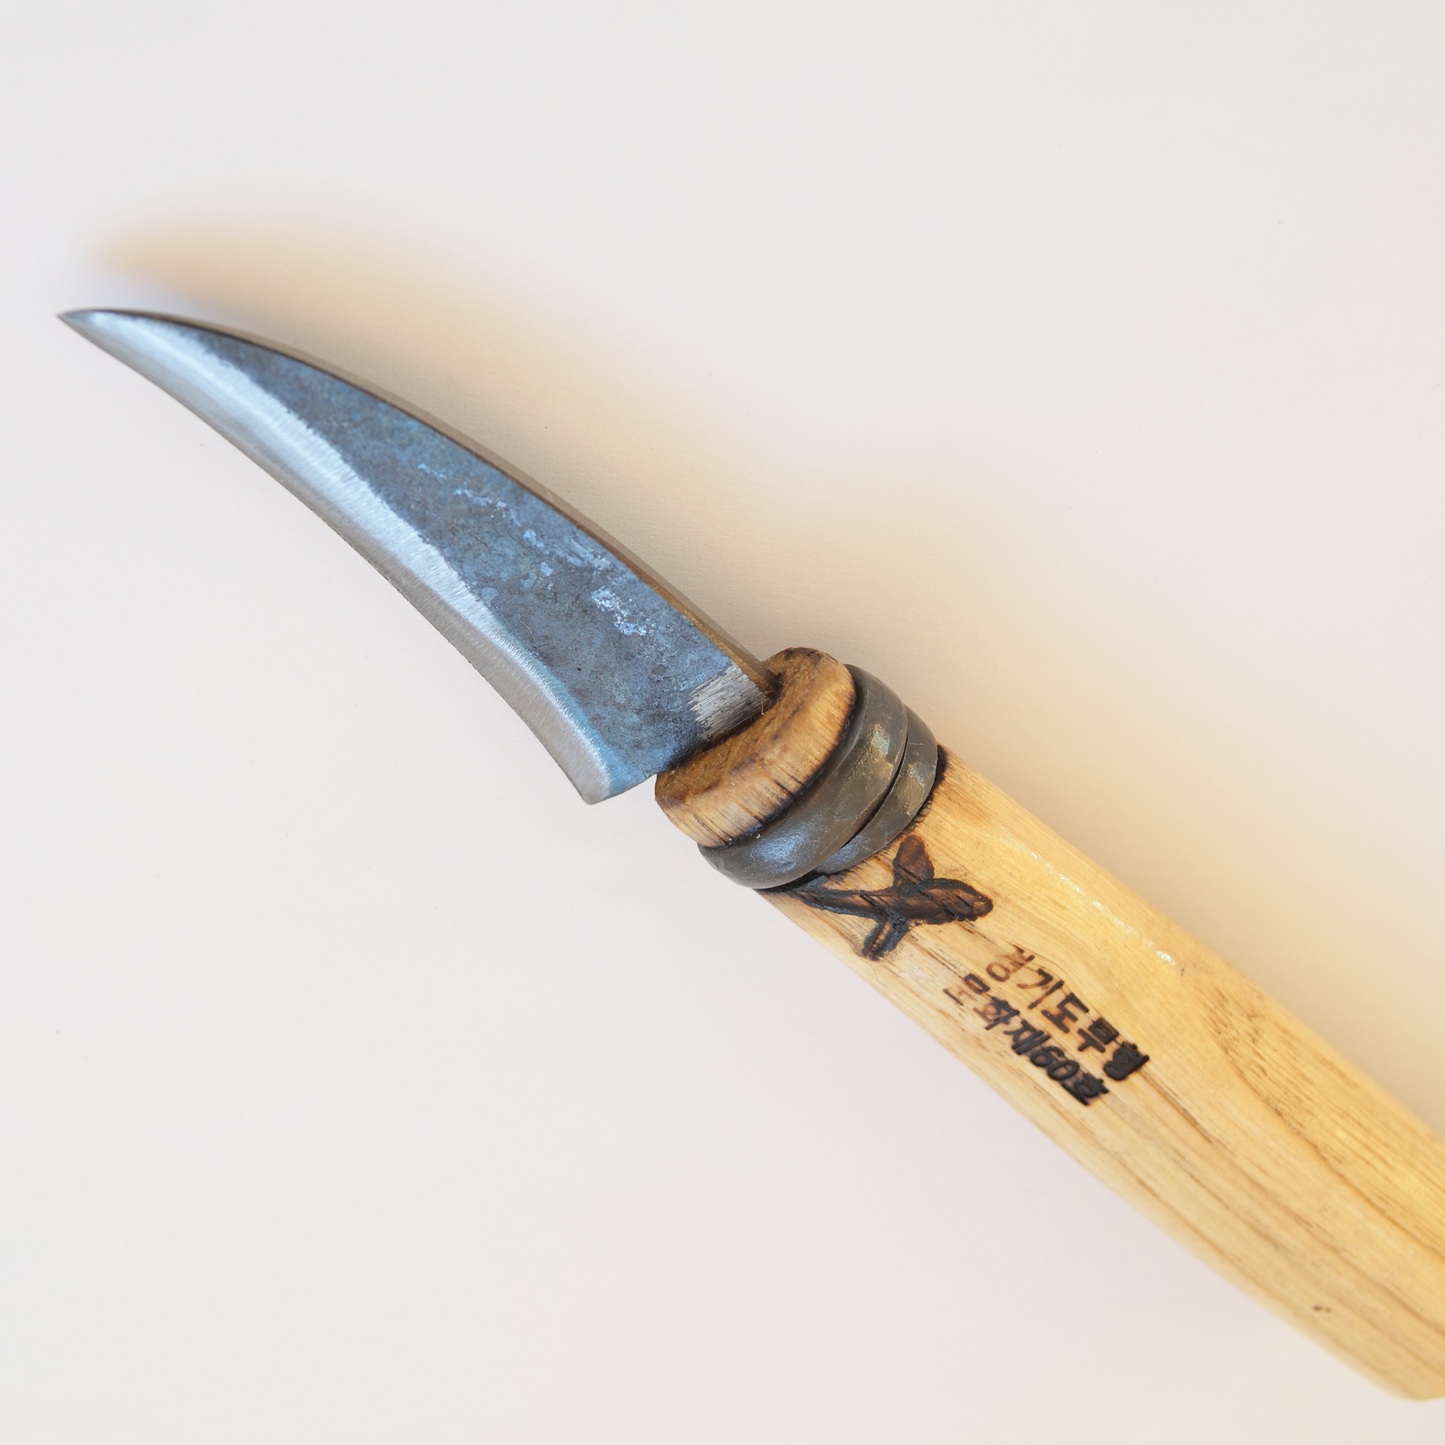 Master Shin - Couteau de jumelage #58 (lame concave)